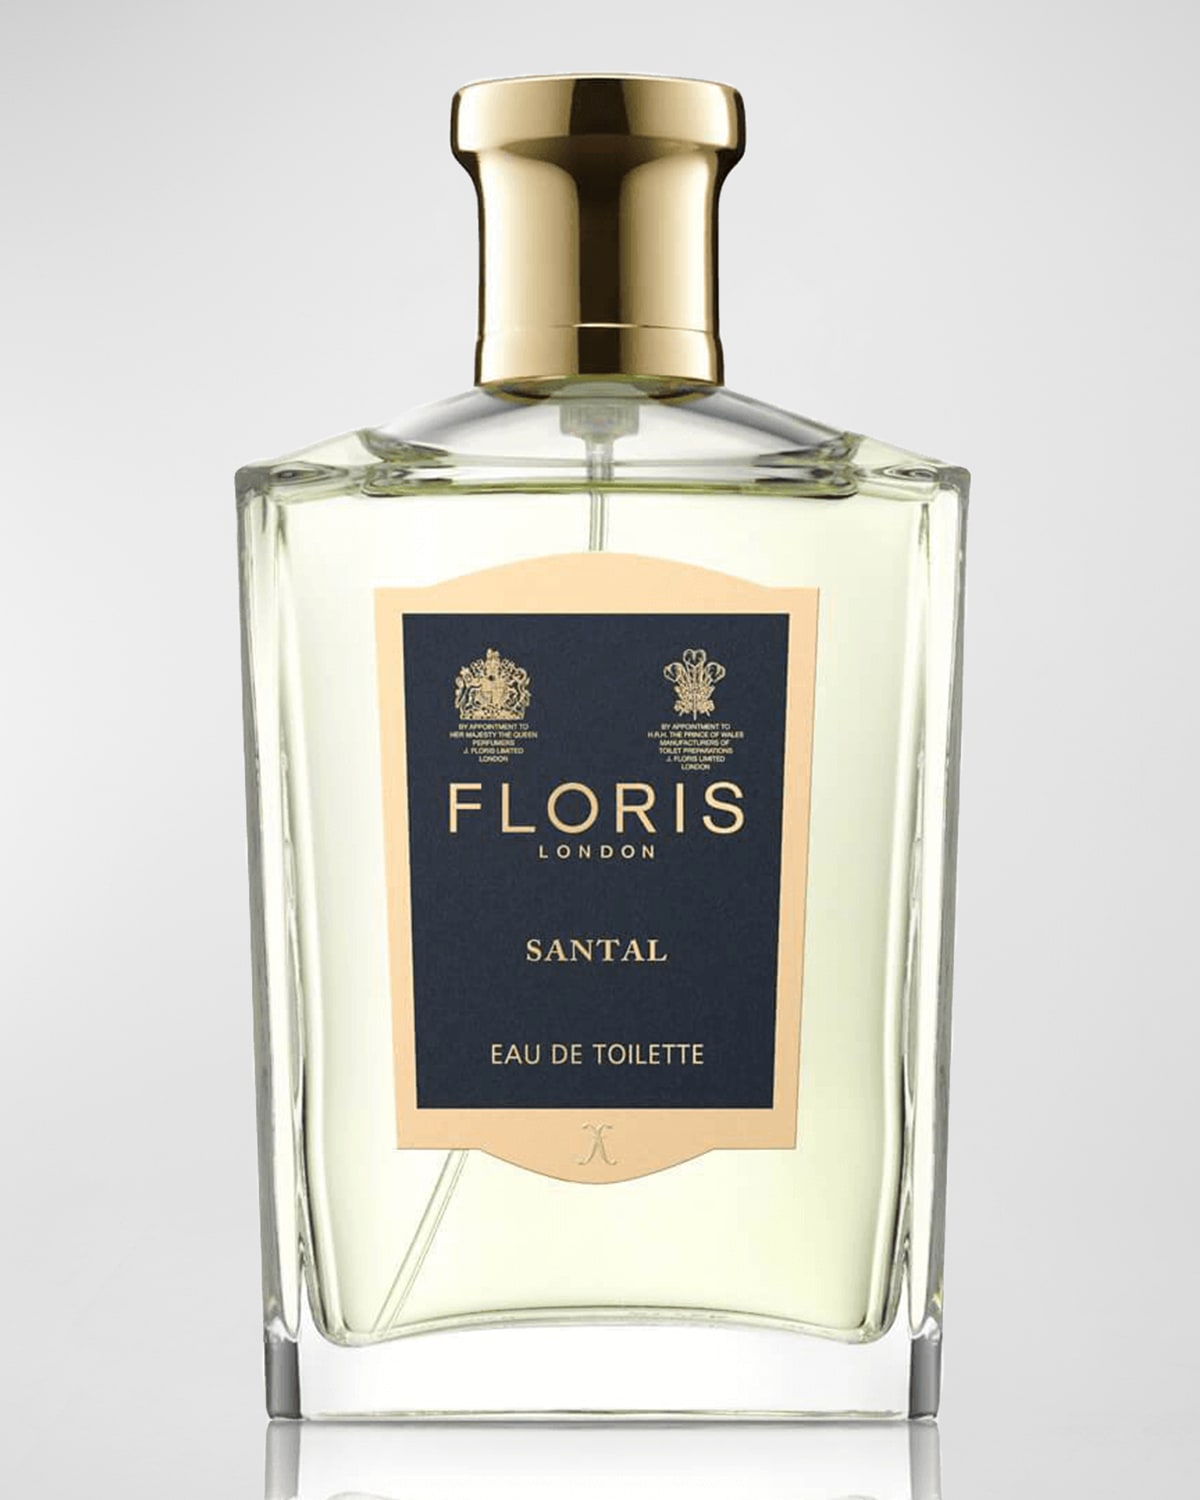 Floris London Santal Eau de Toilette, 3.4 oz.